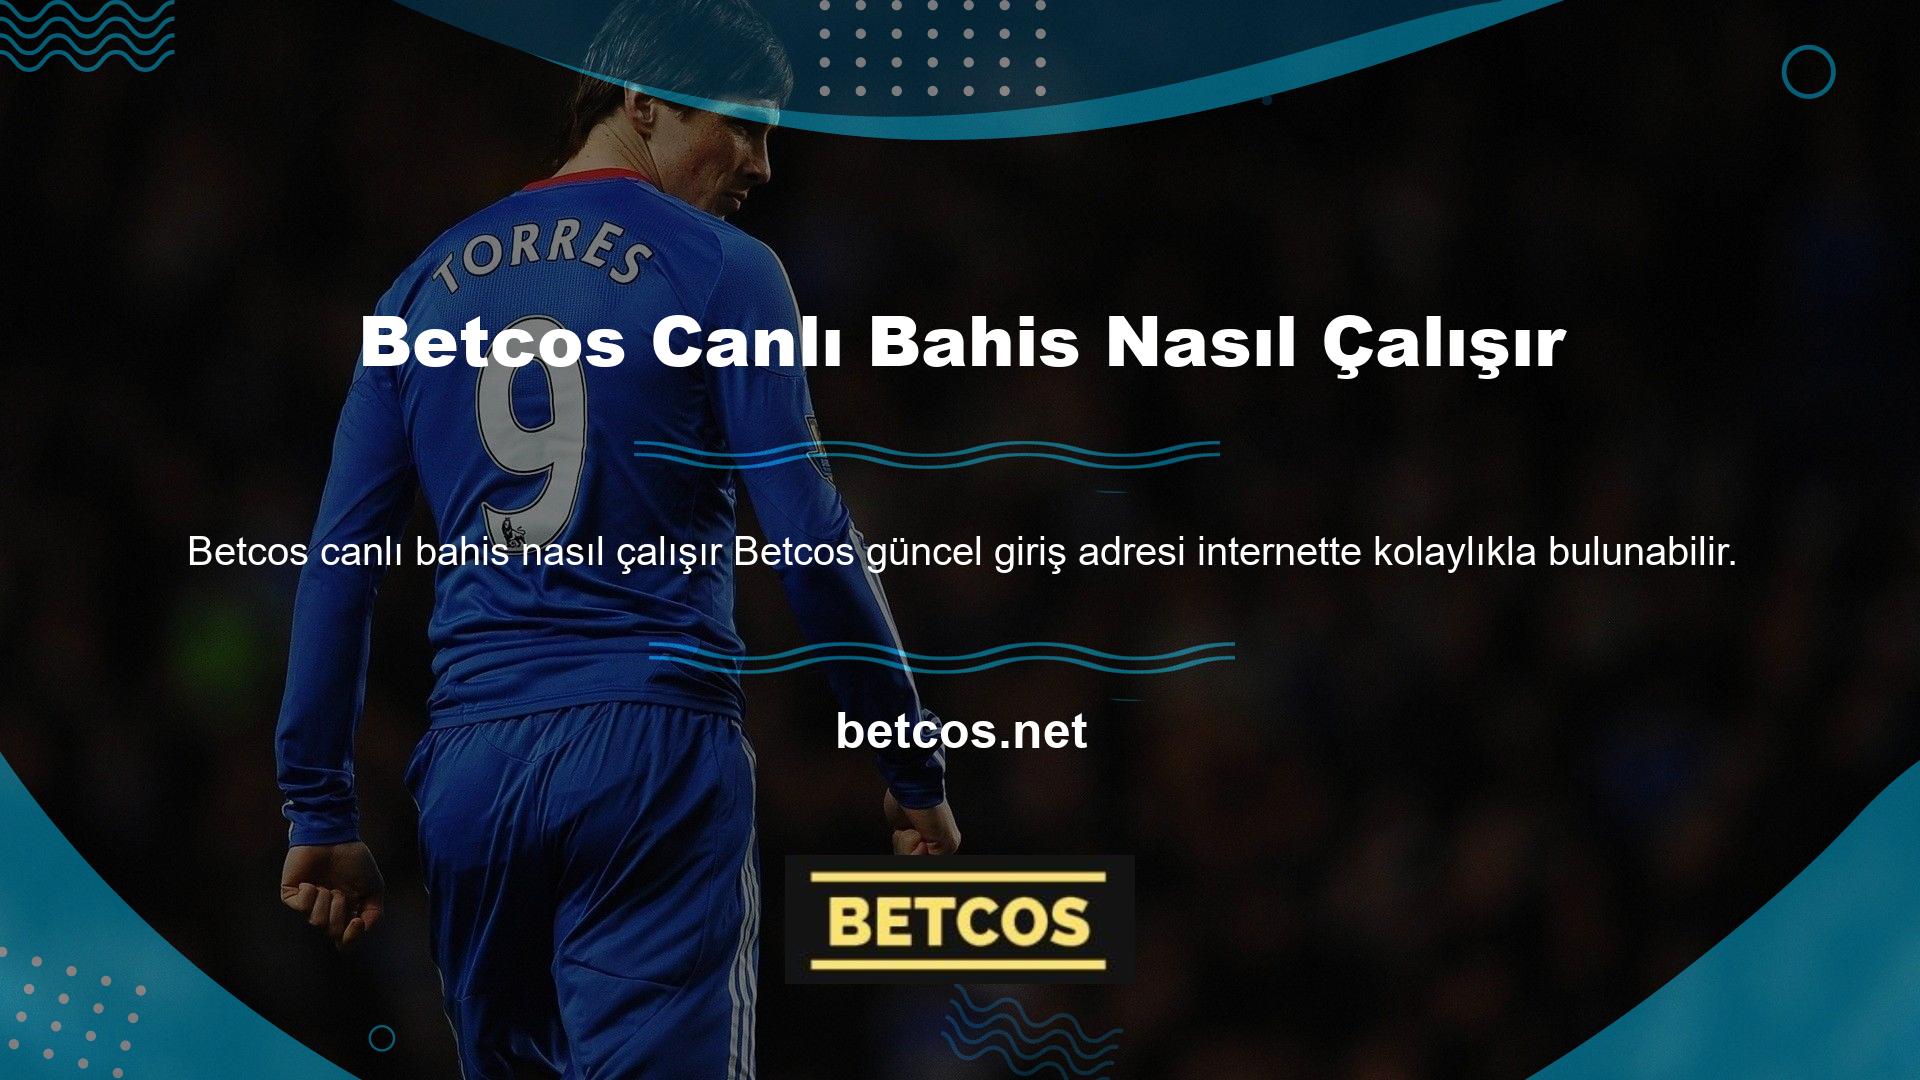 Betcos web sitesi adı özellikle sosyal medya platformlarında yaygın olarak kullanılmaktadır